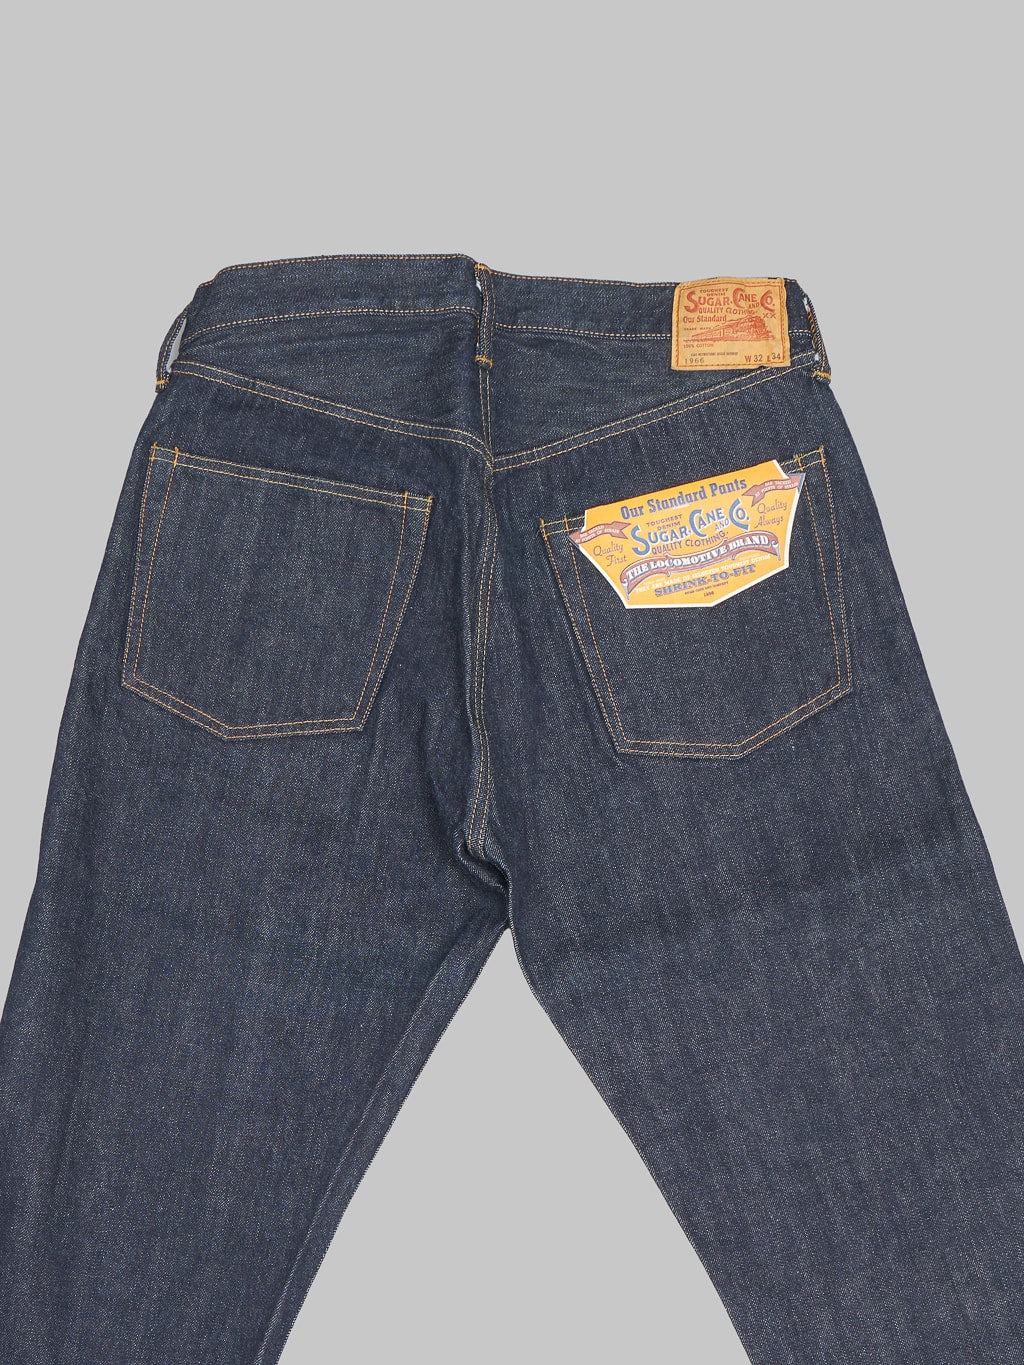 Sugar Cane 1966 Model 14oz Regular Straight Jeans back pockets